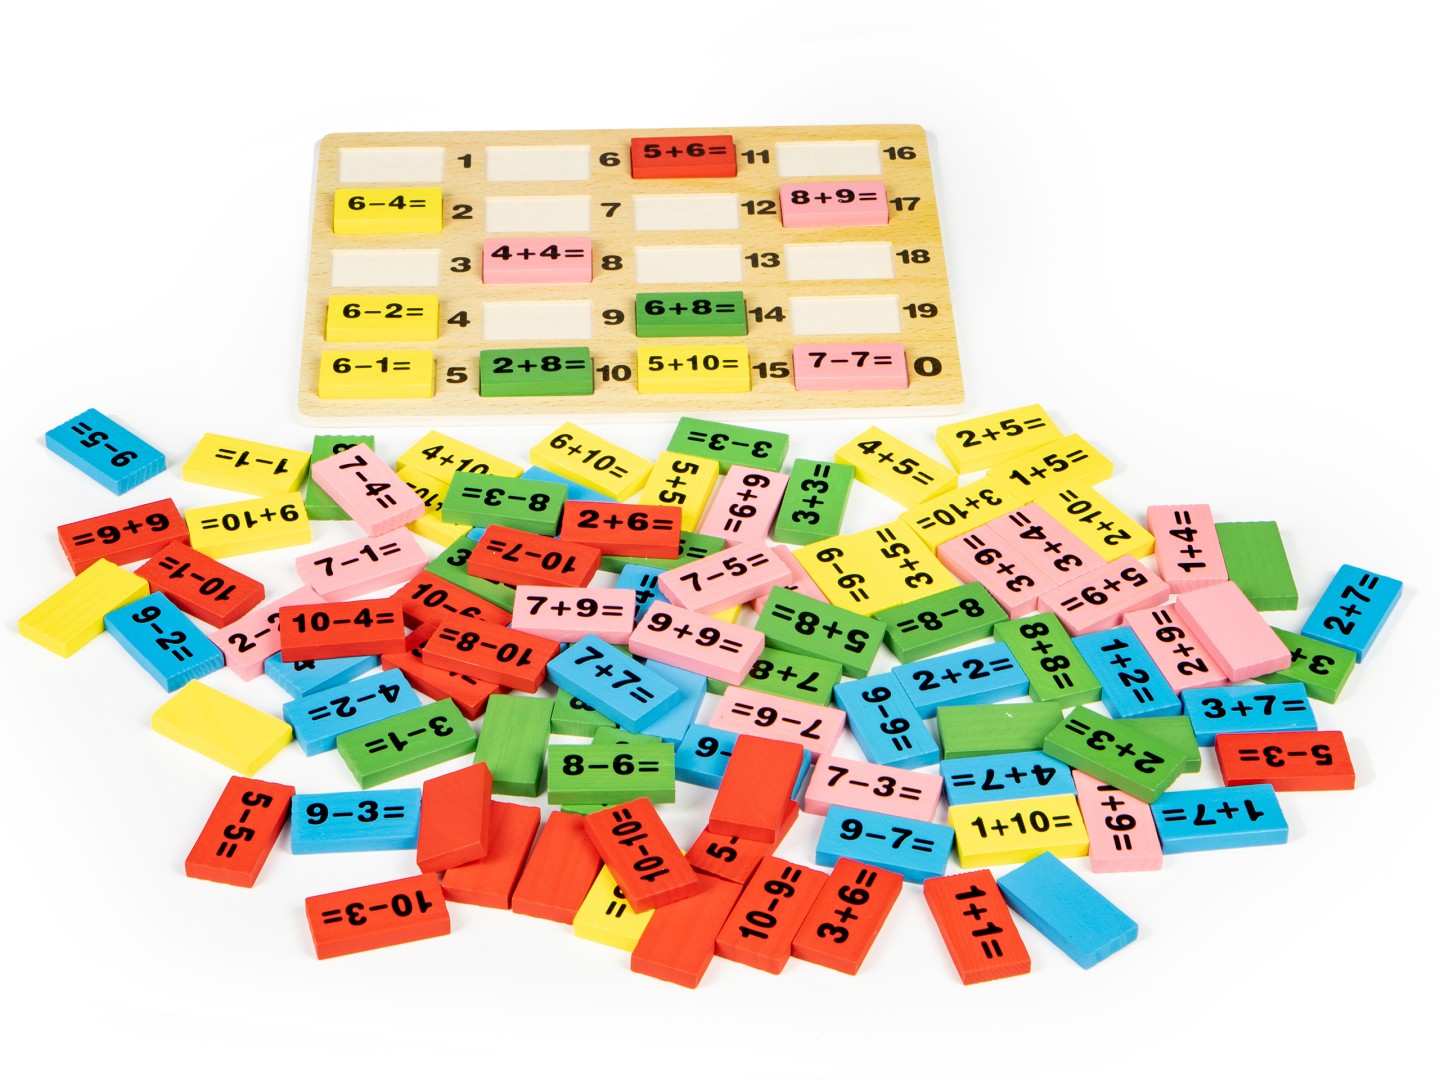 Blocuri matematice cu tablă educativă pentru domino